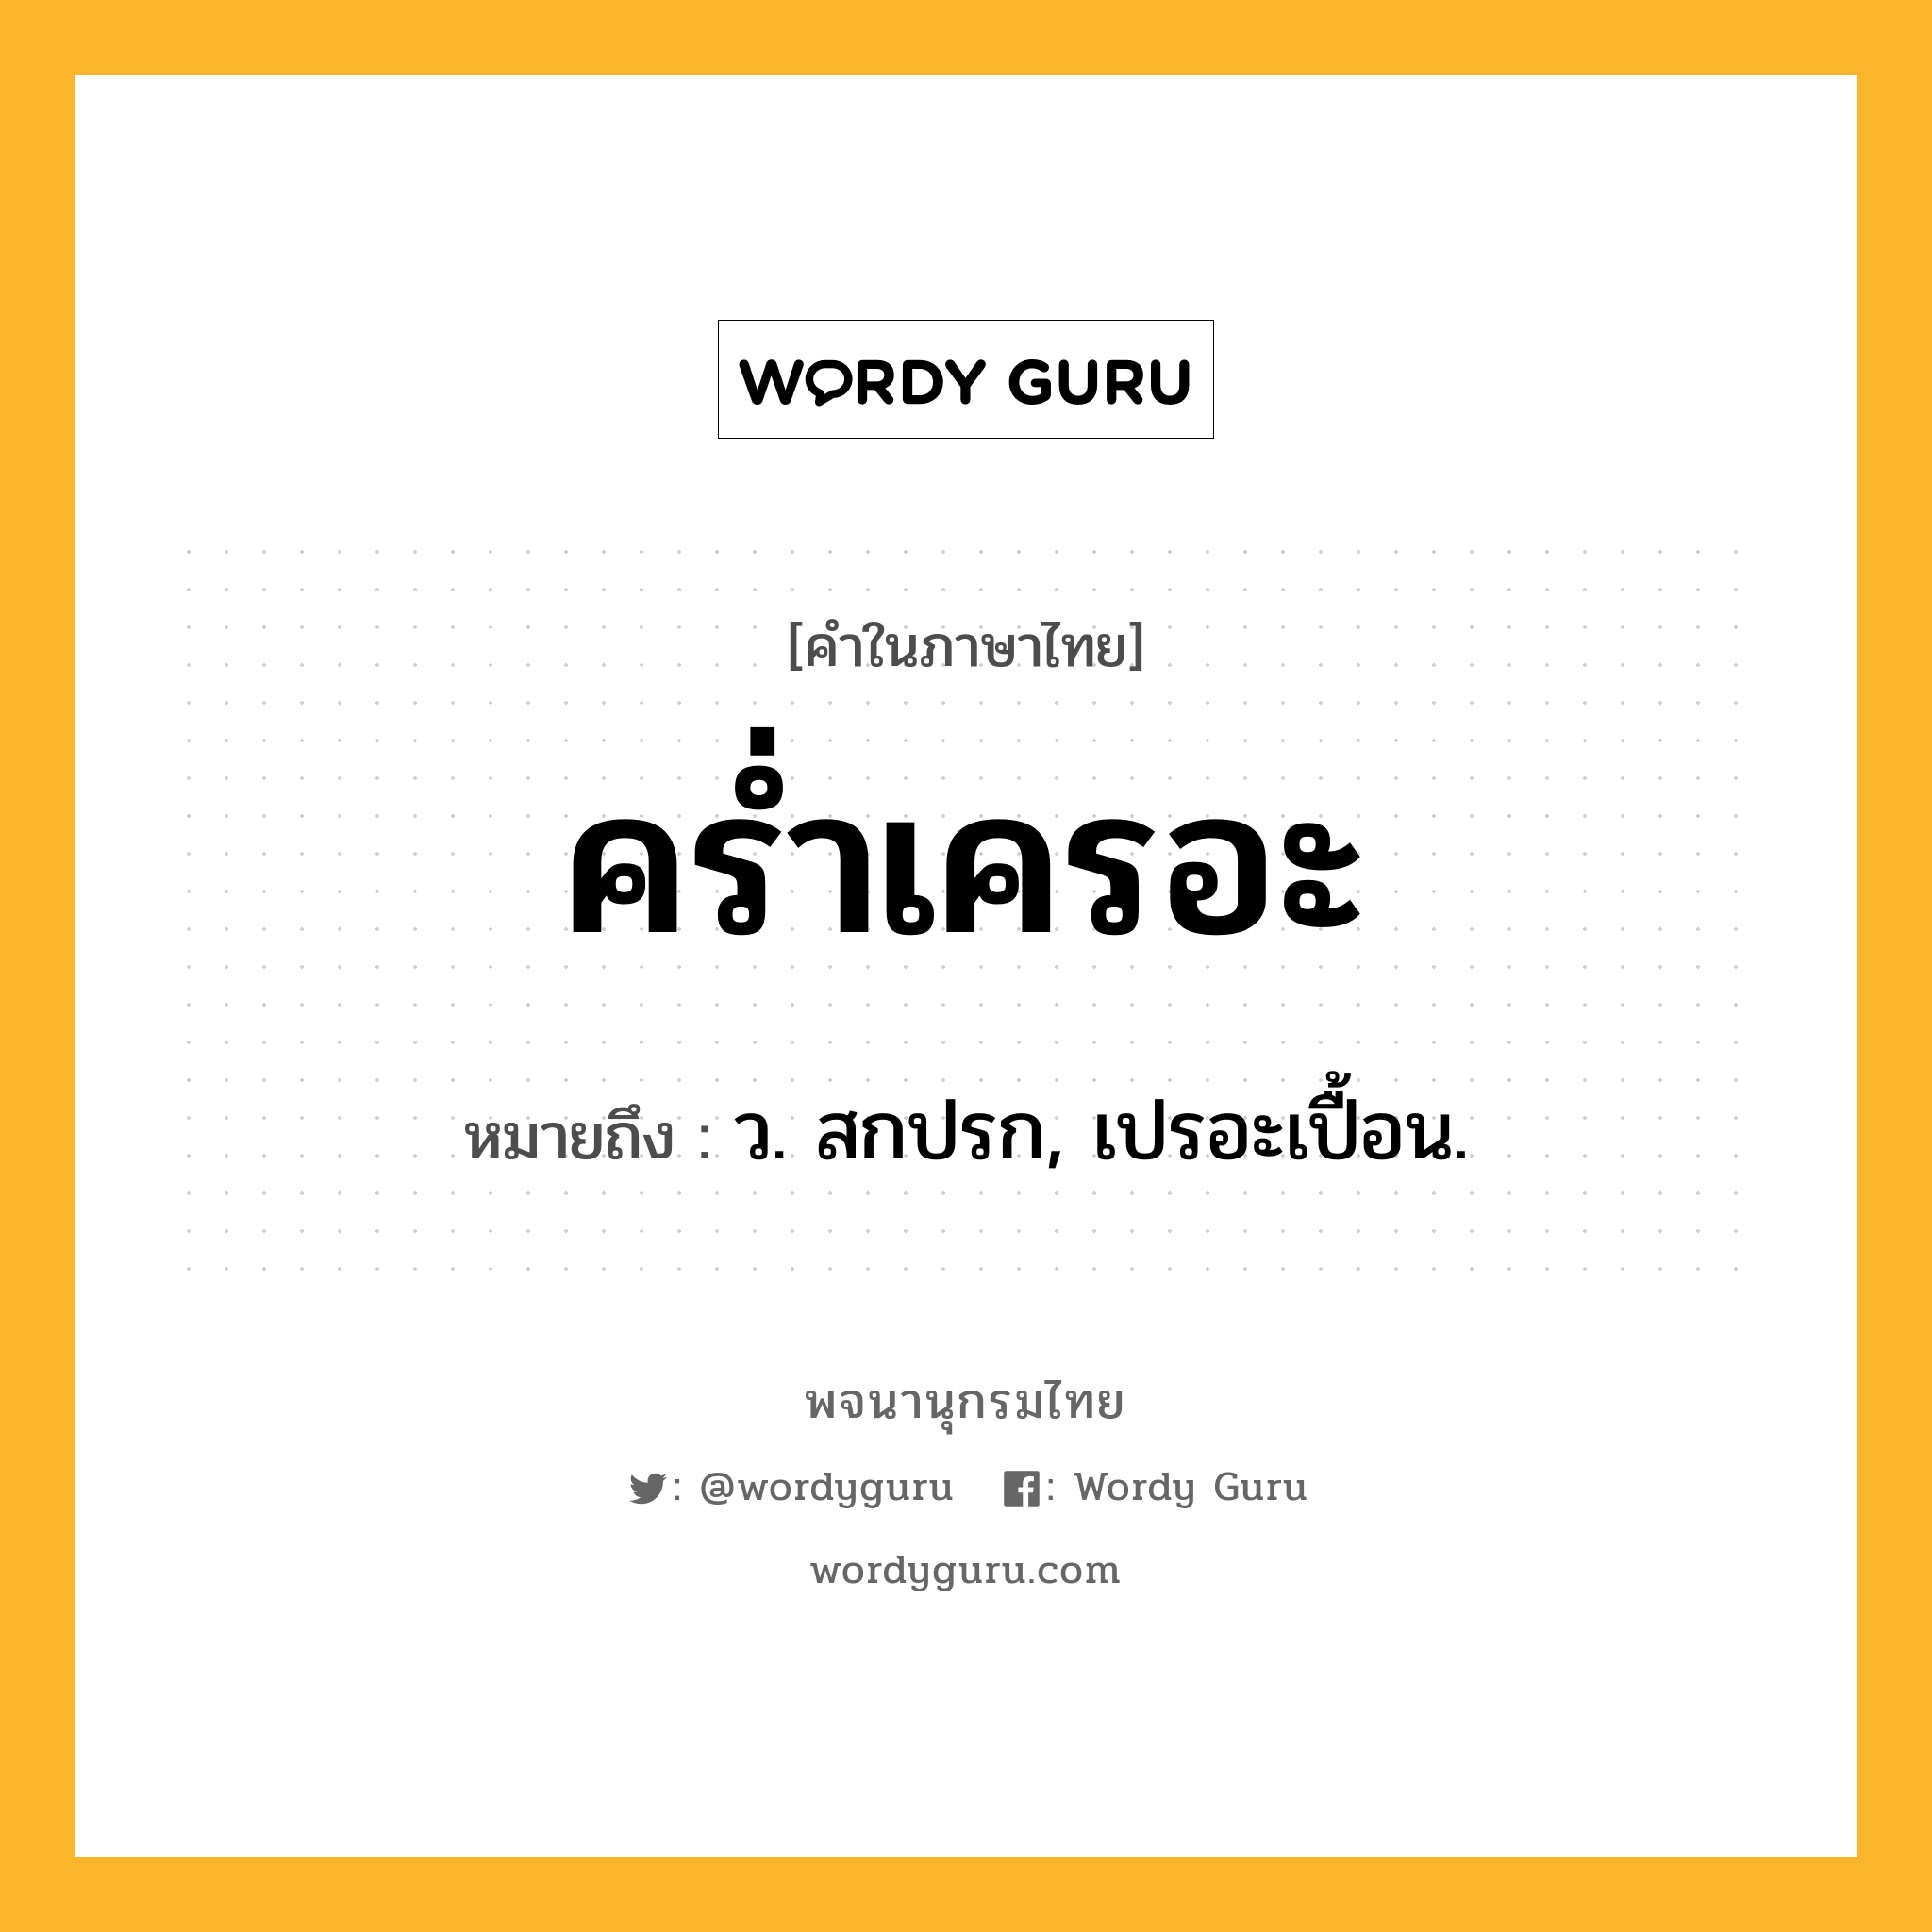 คร่ำเครอะ ความหมาย หมายถึงอะไร?, คำในภาษาไทย คร่ำเครอะ หมายถึง ว. สกปรก, เปรอะเปื้อน.